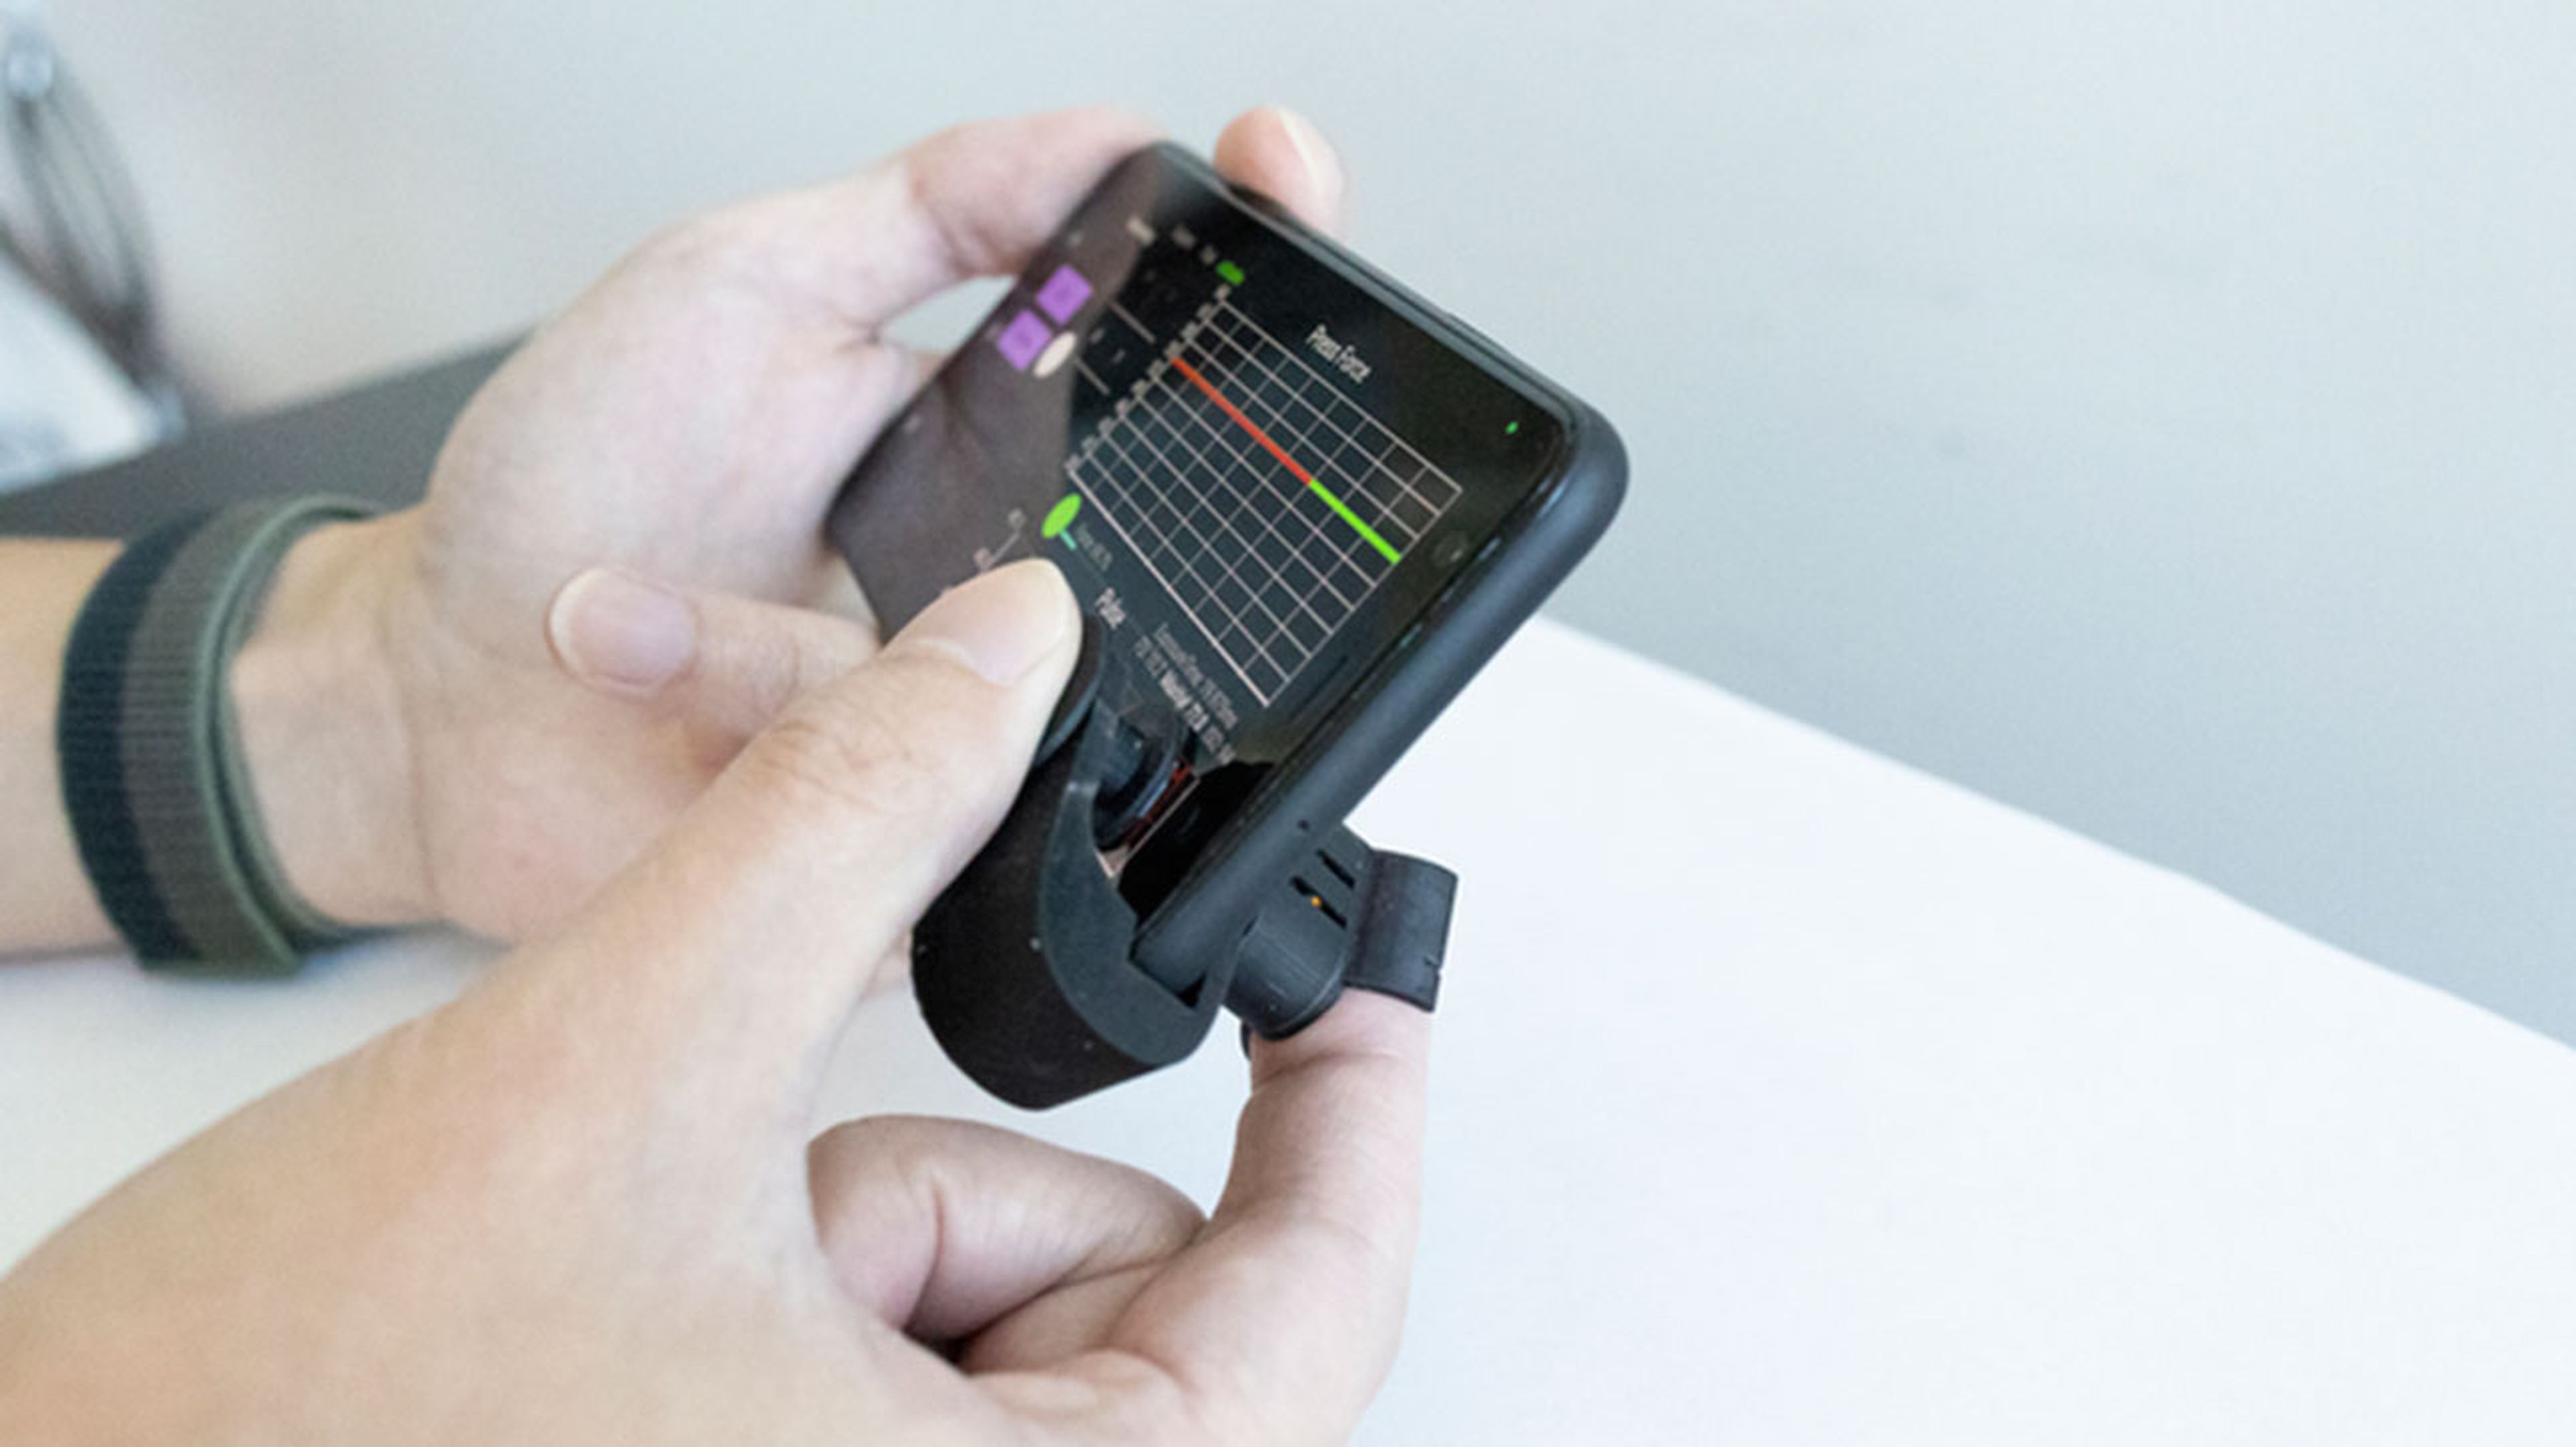 Ingenieros crean un monitor de presión arterial barato con un móvil y un simple clip de plástico